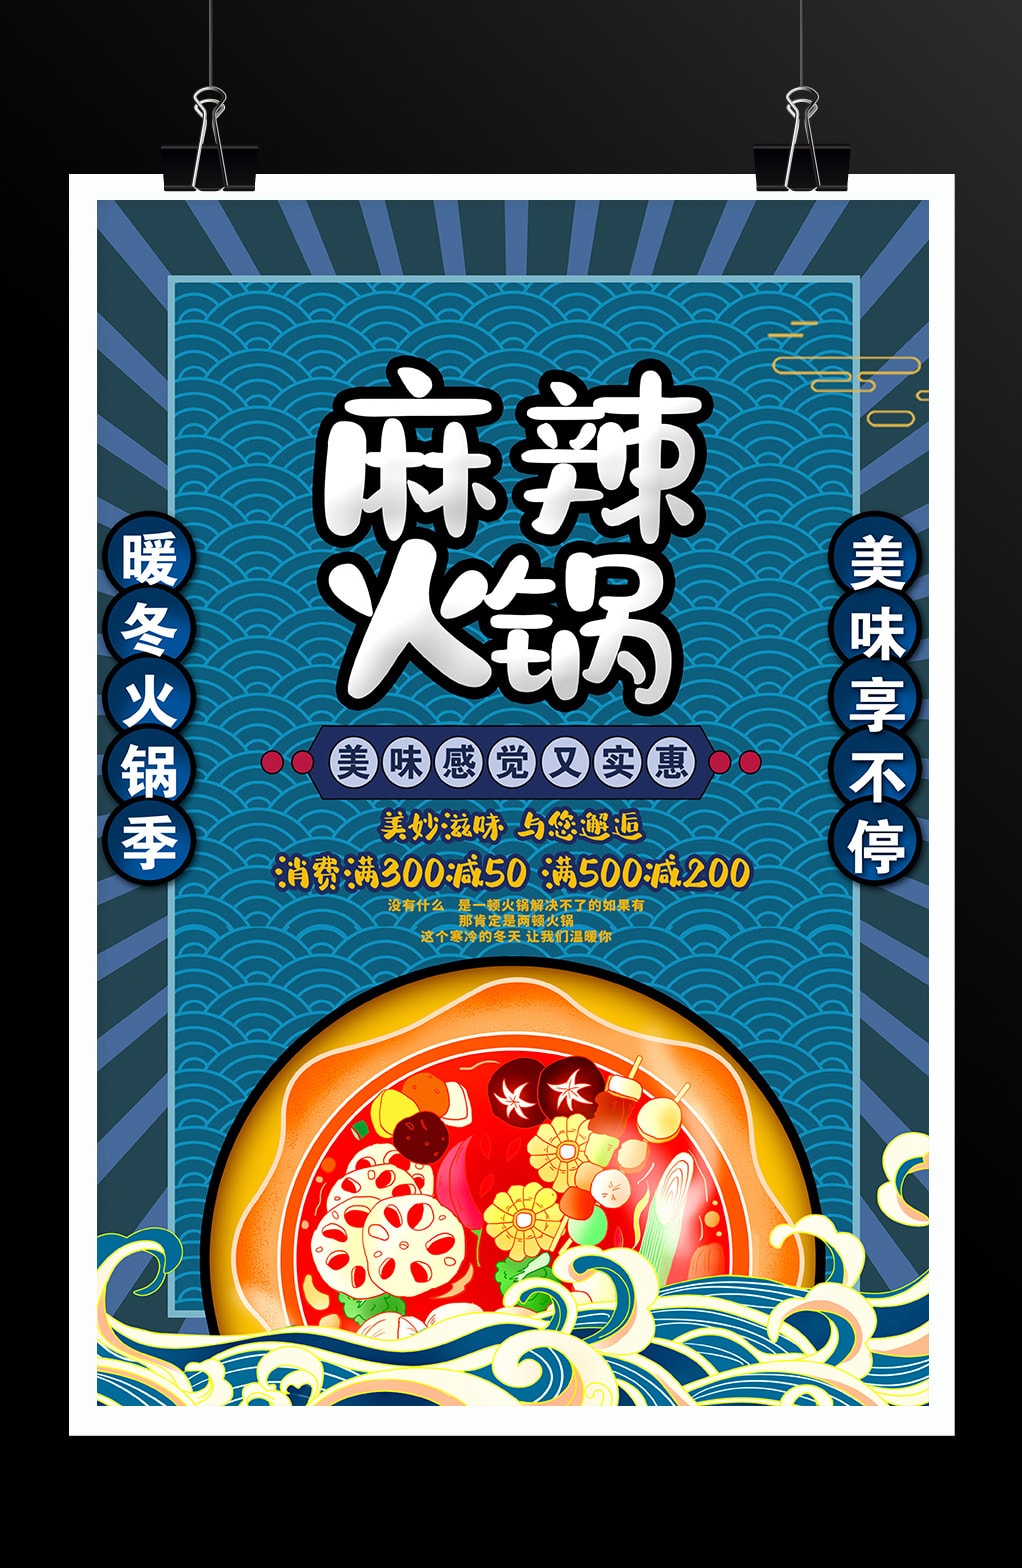 藍色中國風麻辣火鍋火鍋店促銷宣傳海報設計